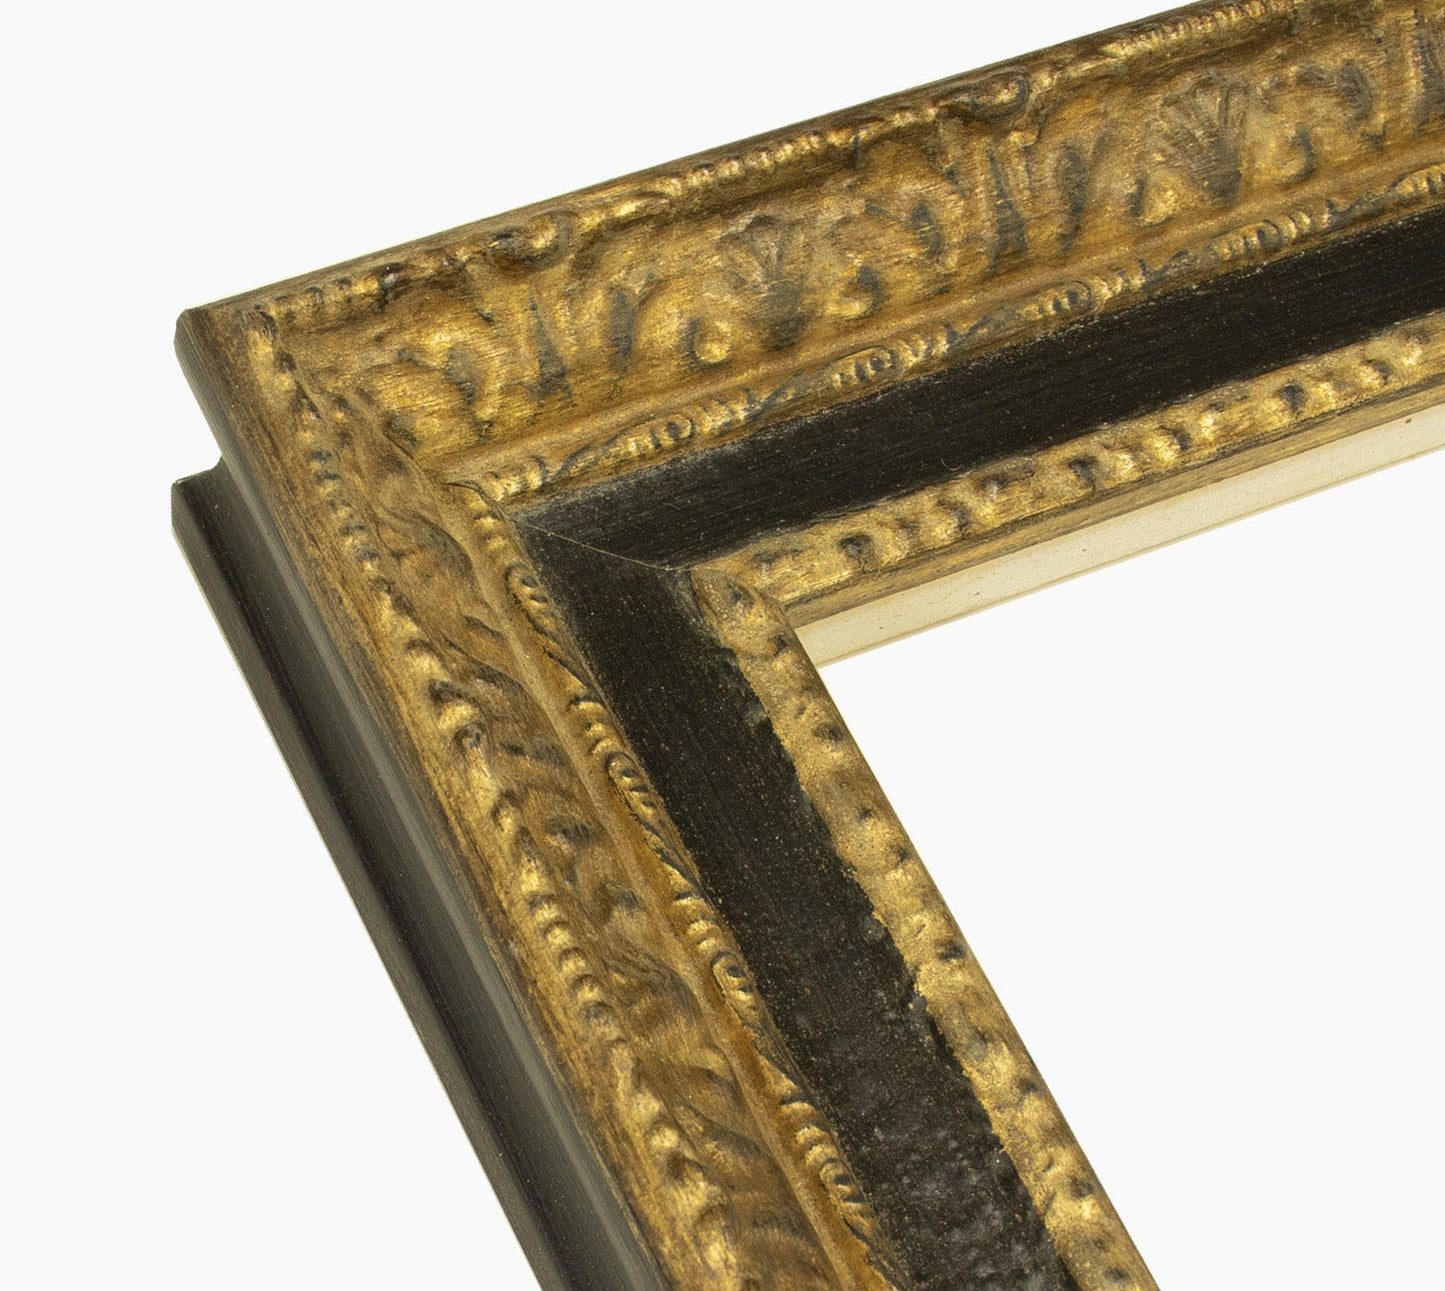 643.601 cadre en bois à la feuille d'or gorge noir mesure de profil 65x55 mm Lombarda cornici S.n.c.